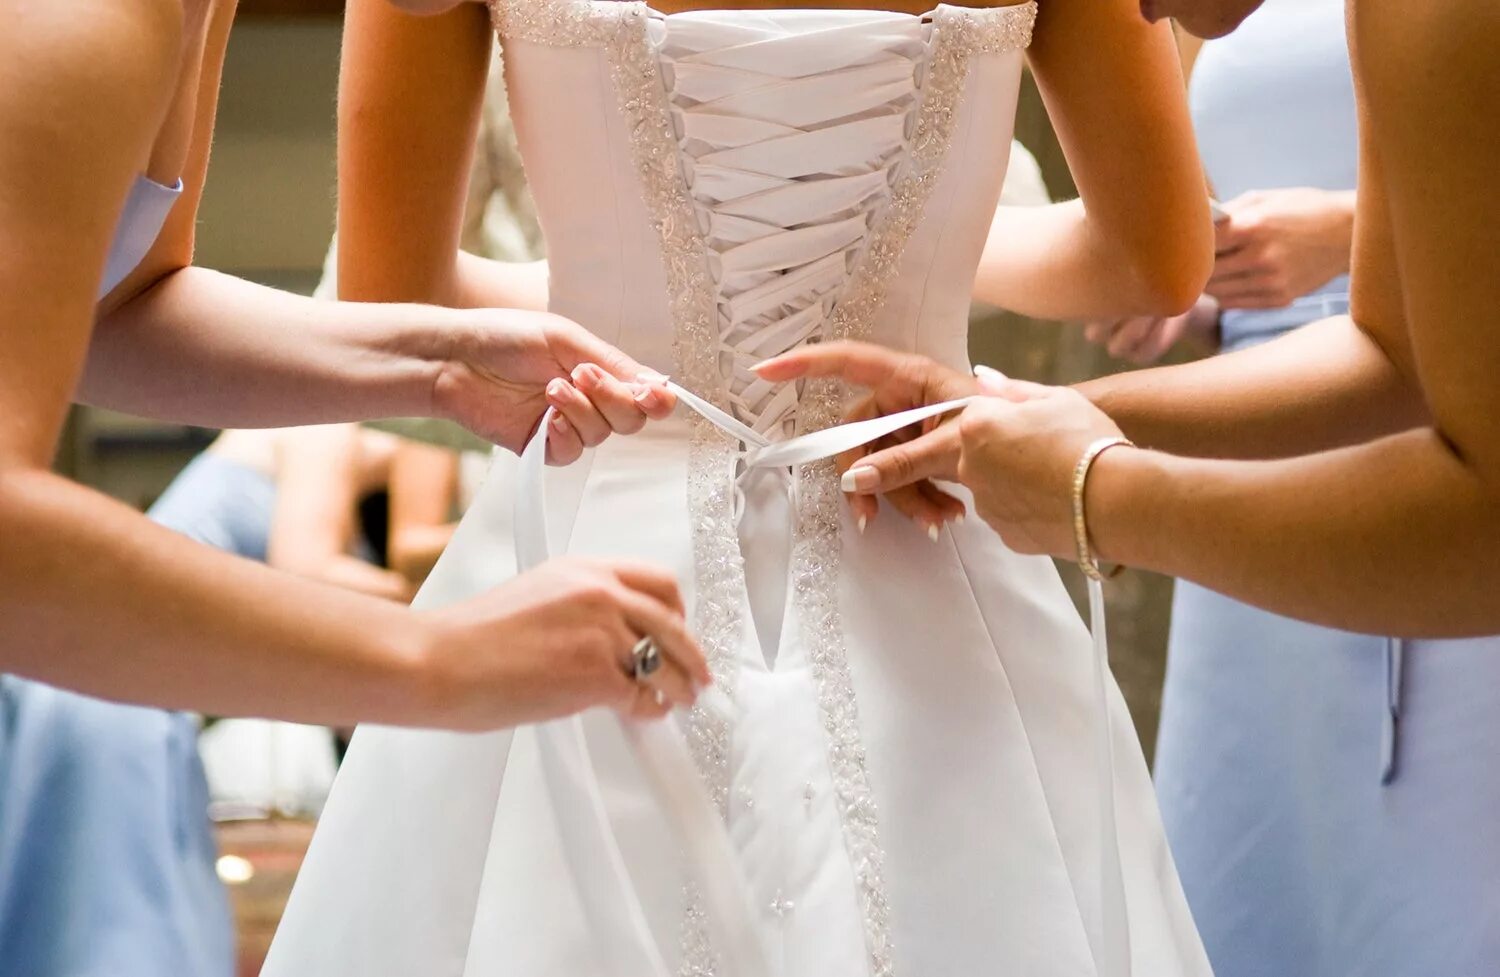 Дают ли выходные на свадьбу. Примерка свадебного платья. Подготовка к свадьбе. Выбор платья на свадьбу. Примерка свадебного платья в салоне.